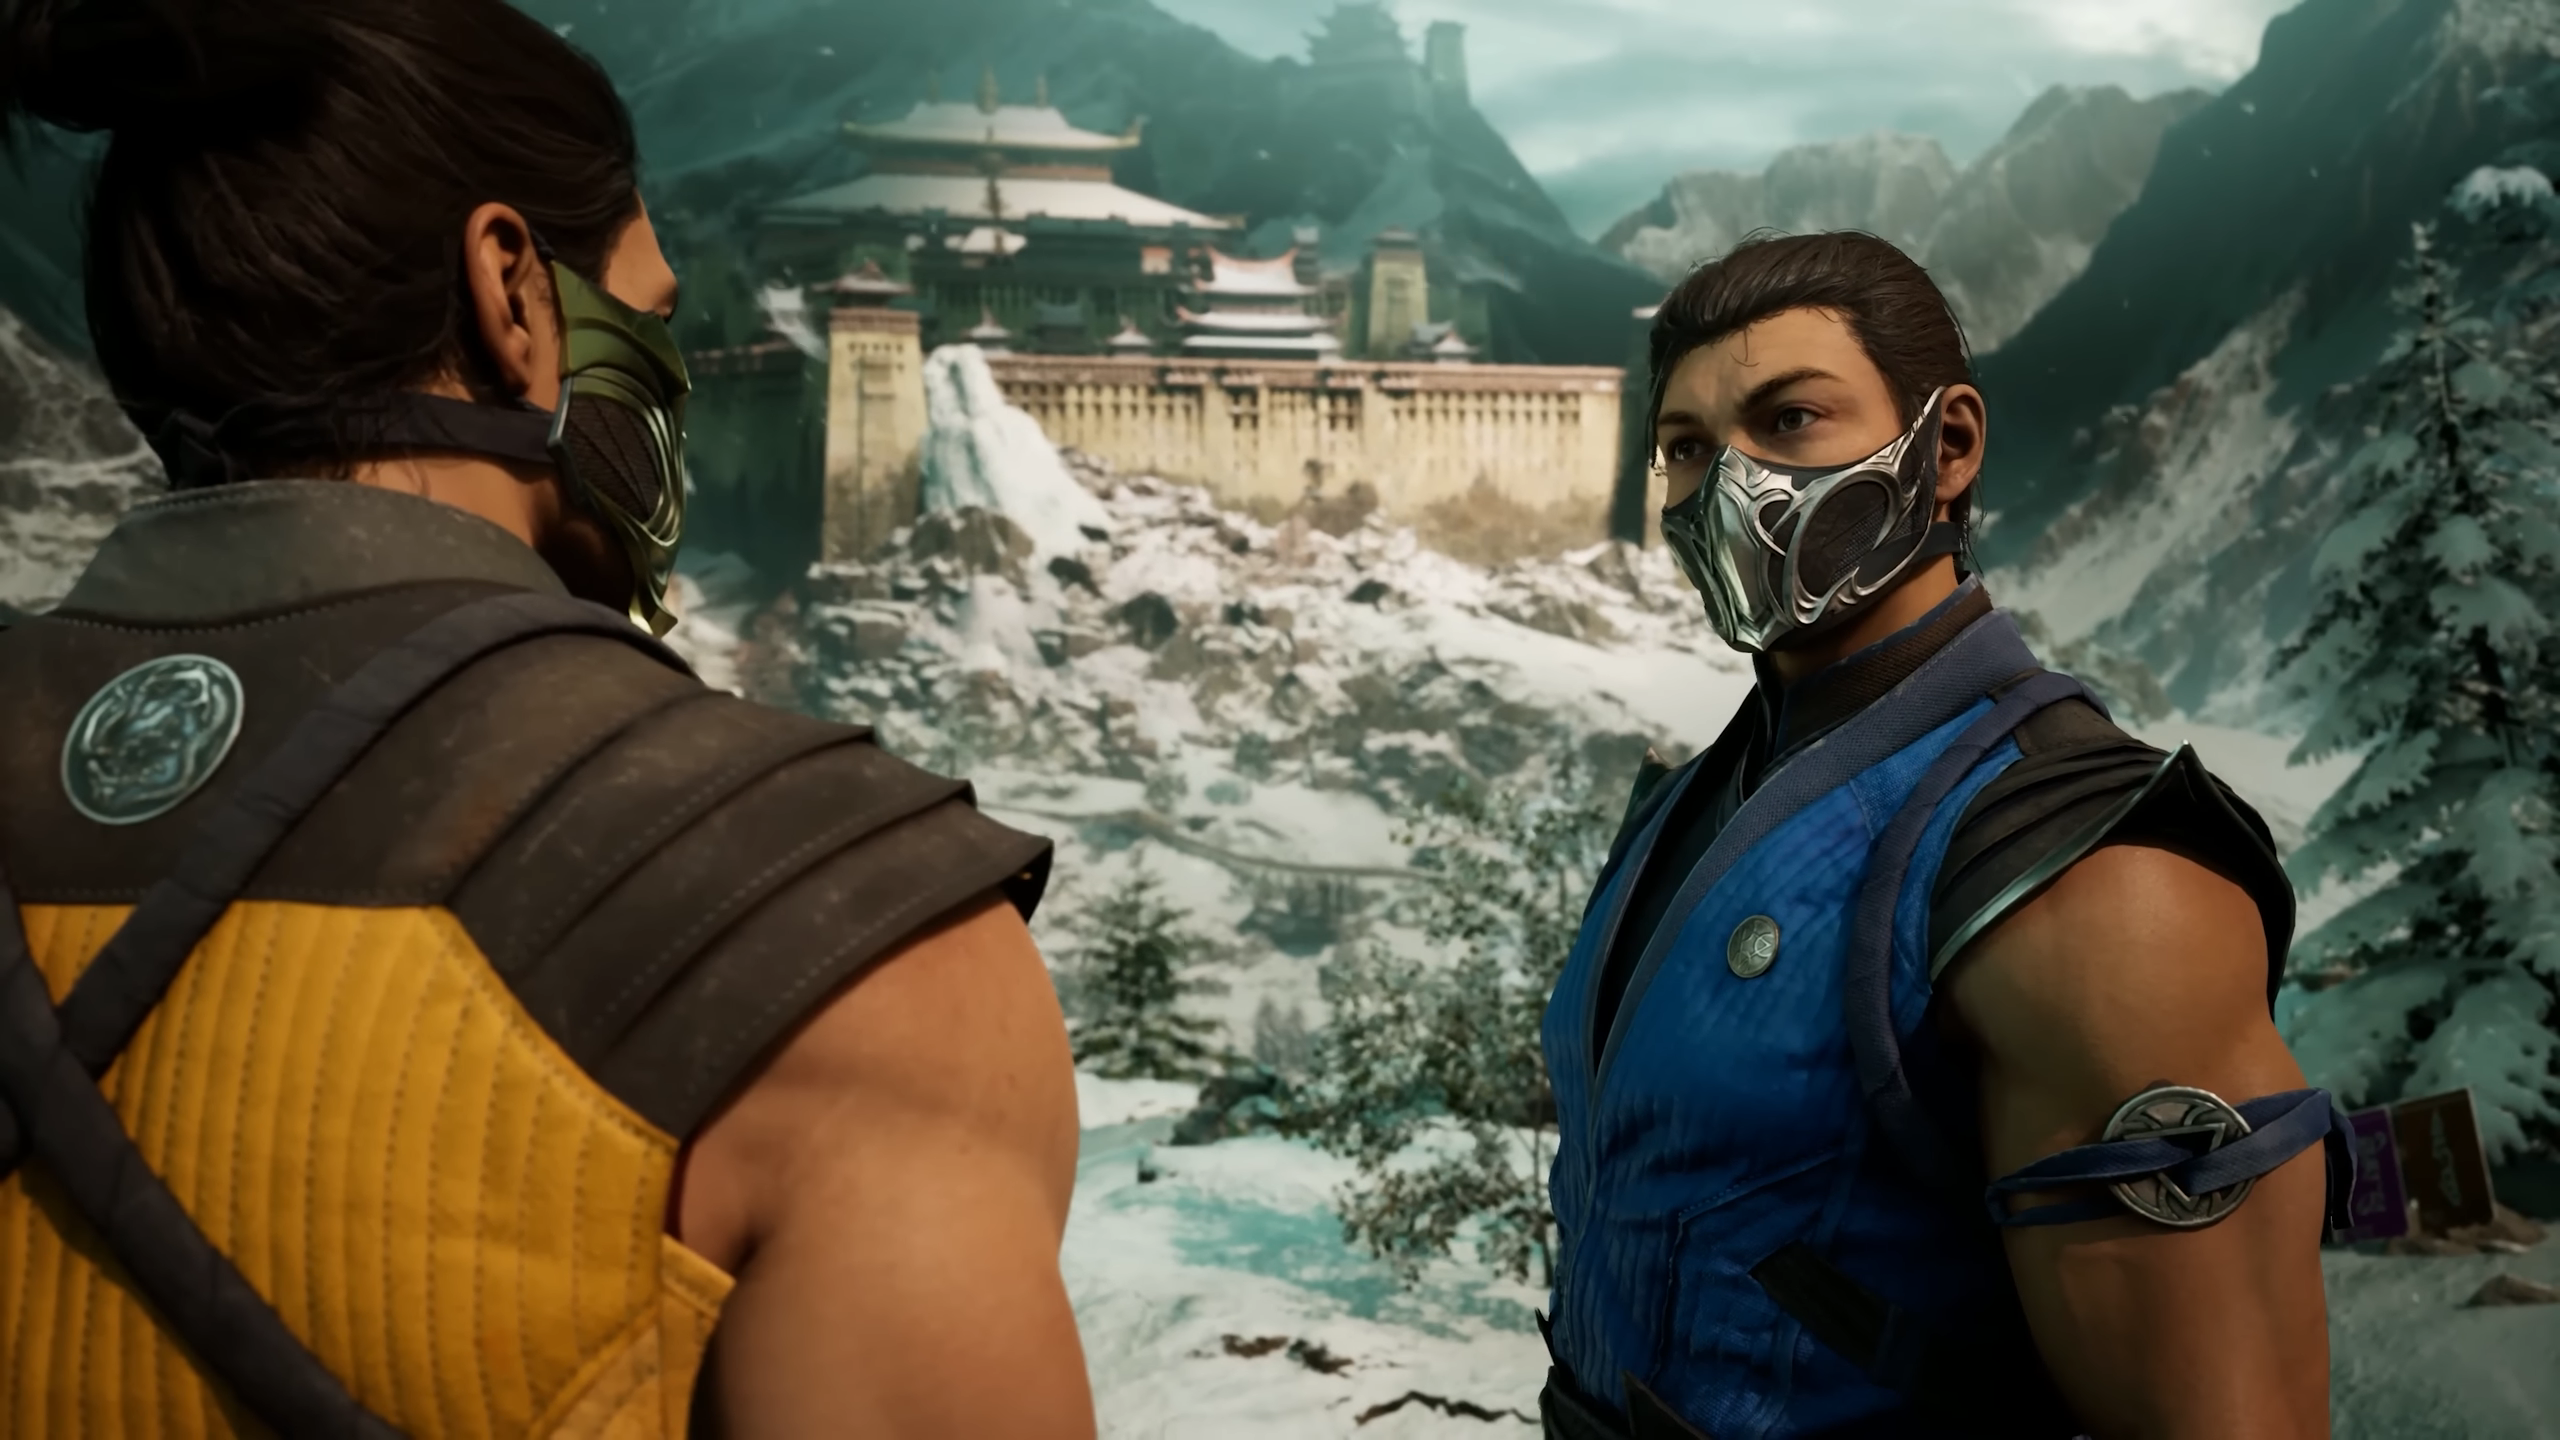 Immagine pubblicata in relazione al seguente contenuto: Mortal Kombat 1: gameplay trailer ufficiale su Lin Kuei e screenshots in-game | Nome immagine: news34649_Mortal-Kombat-1_Screenshot_1.png